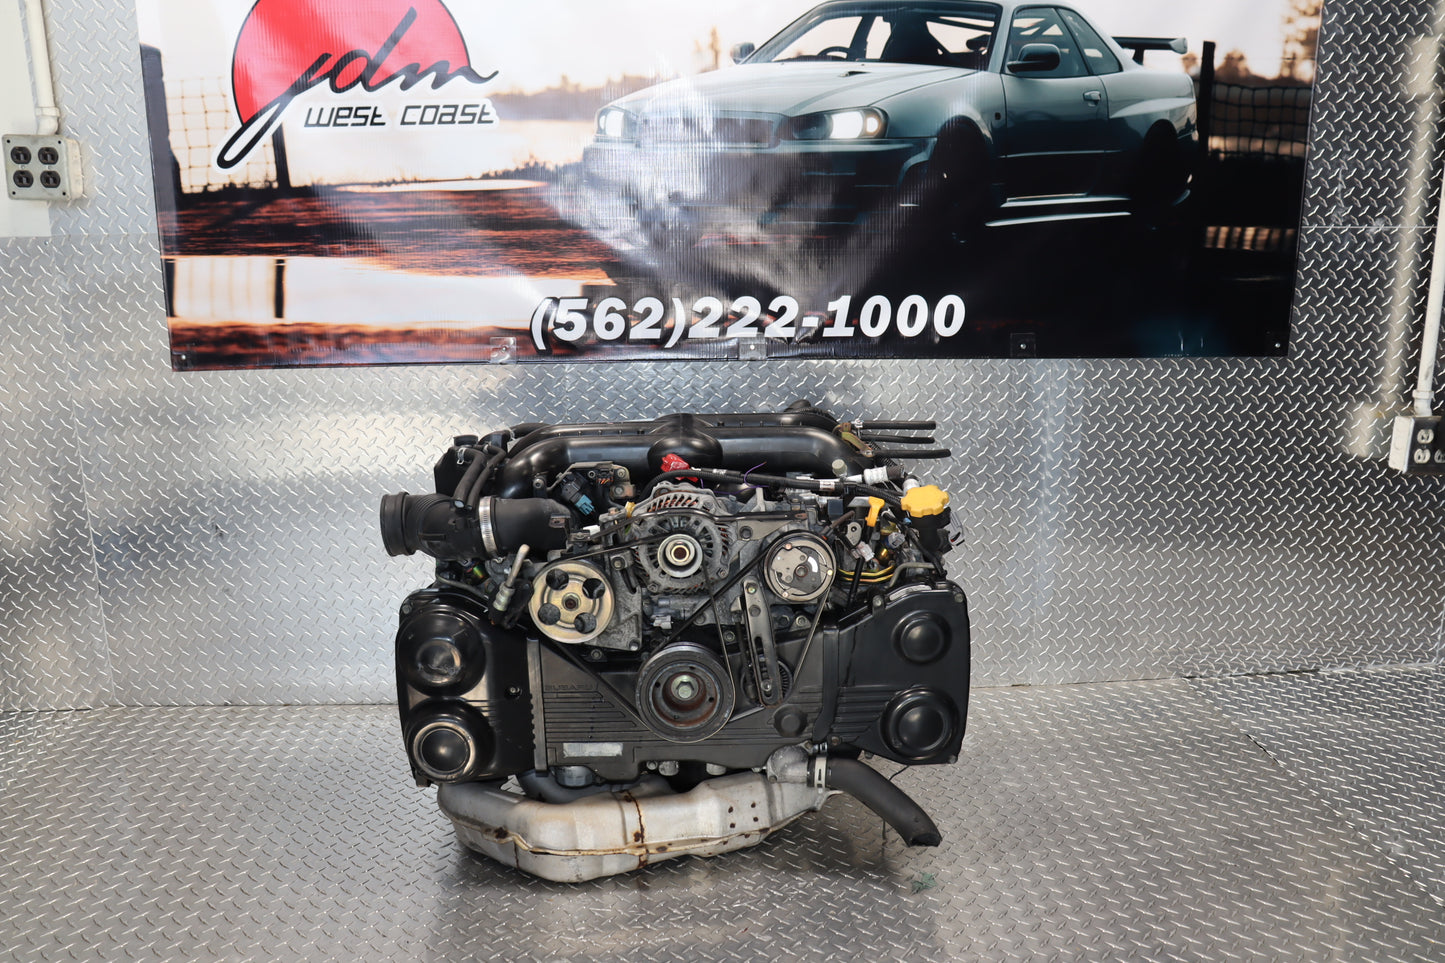 JDM EJ20X 04-06 Subaru 2.0L Turbo Legacy GT Forester Xt Baja Engine AVCS.